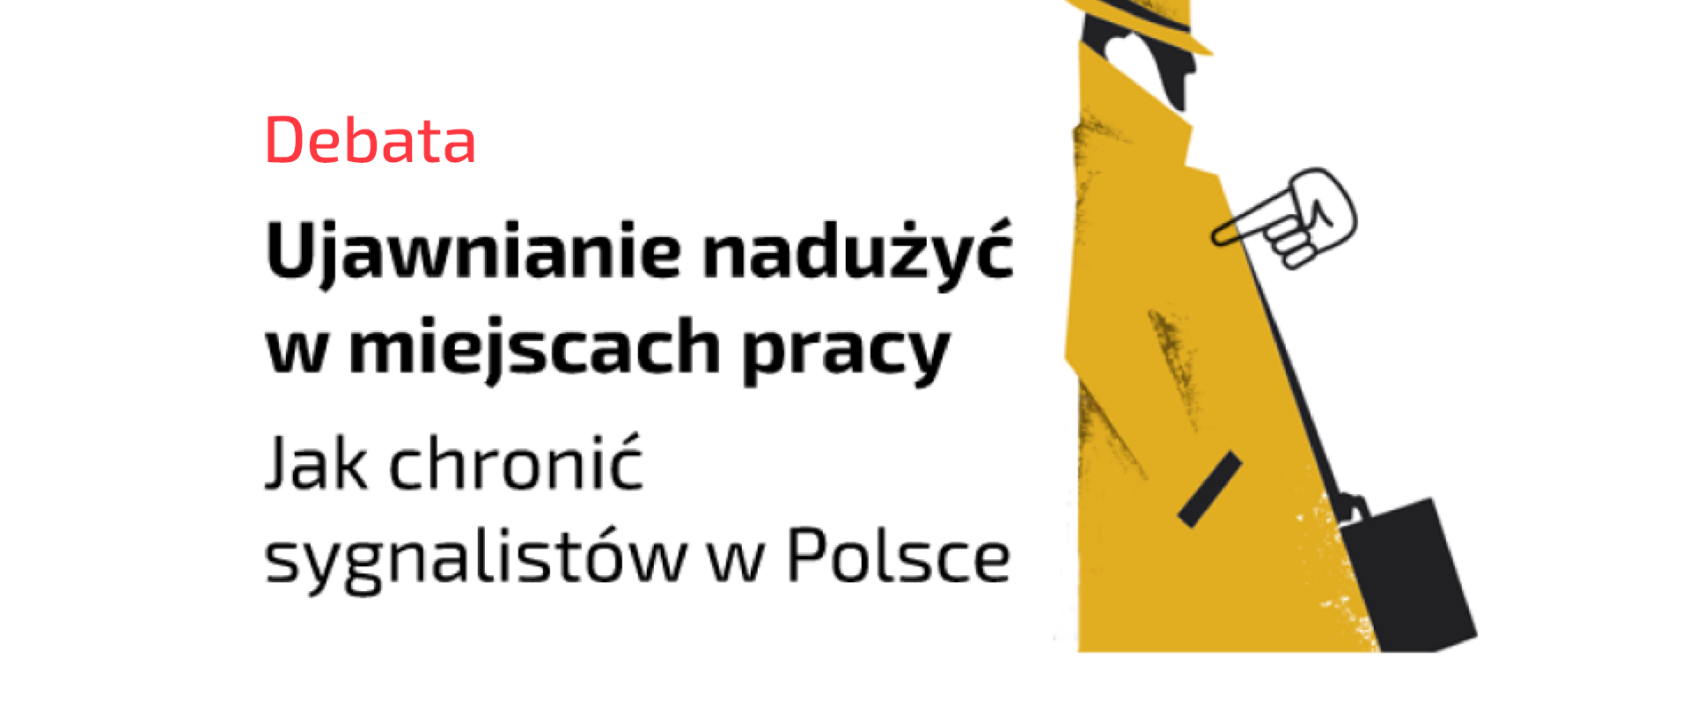 Ujawnianie nadużyć w miejscach pracy. Jak chronić sygnalistów w Polsce – relacja z debaty